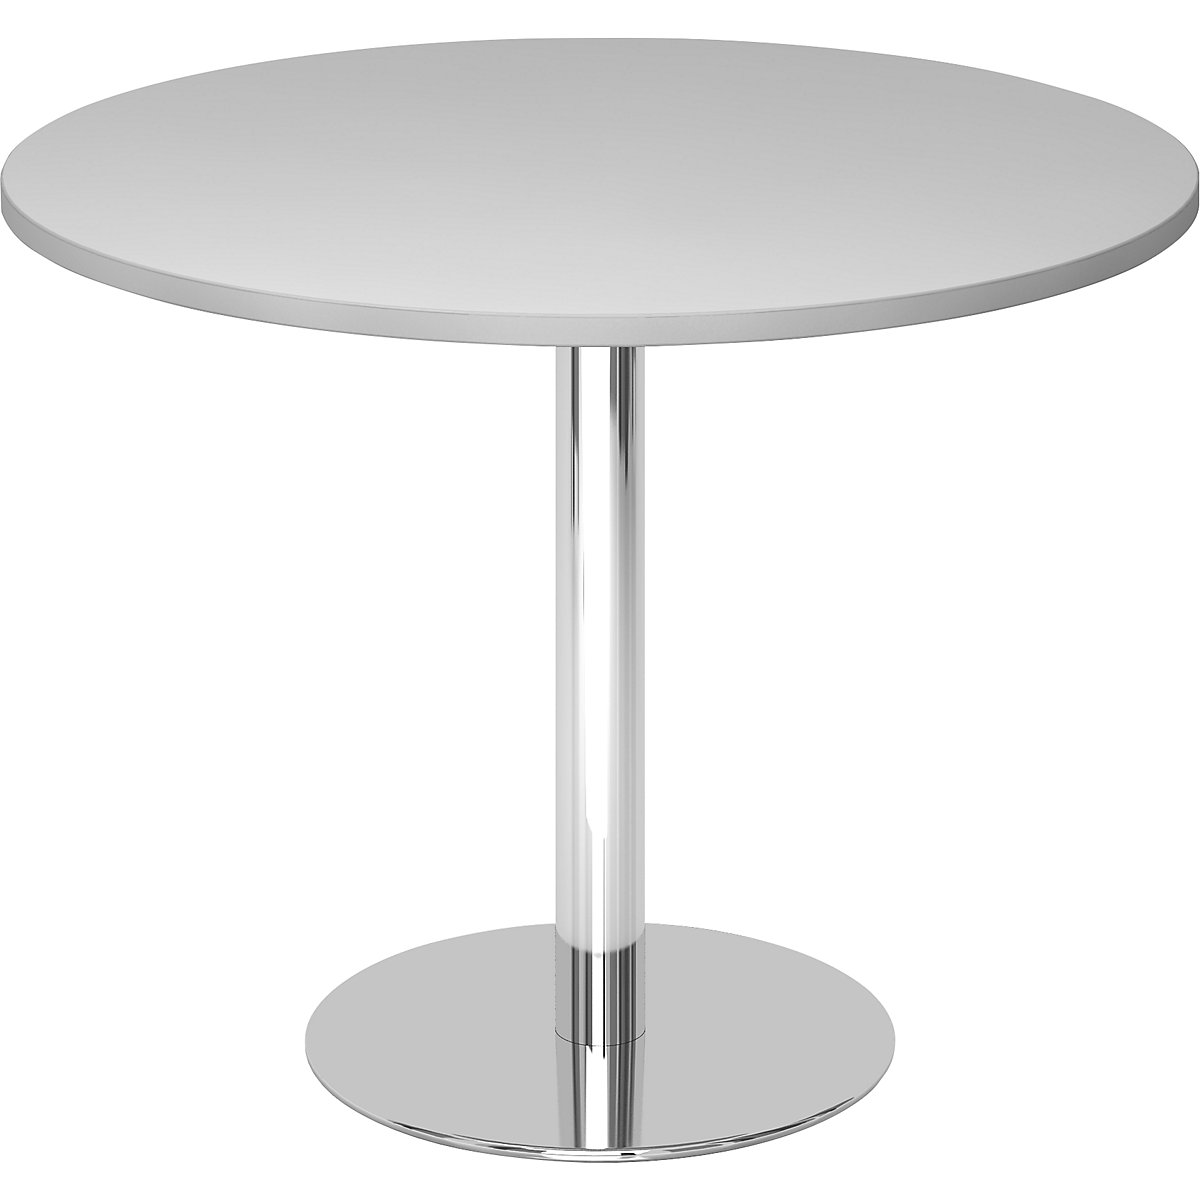 Rokovací stôl, Ø 1000 mm, výška 755 mm, stojan pochrómovaný, doska stola svetlošedá-6